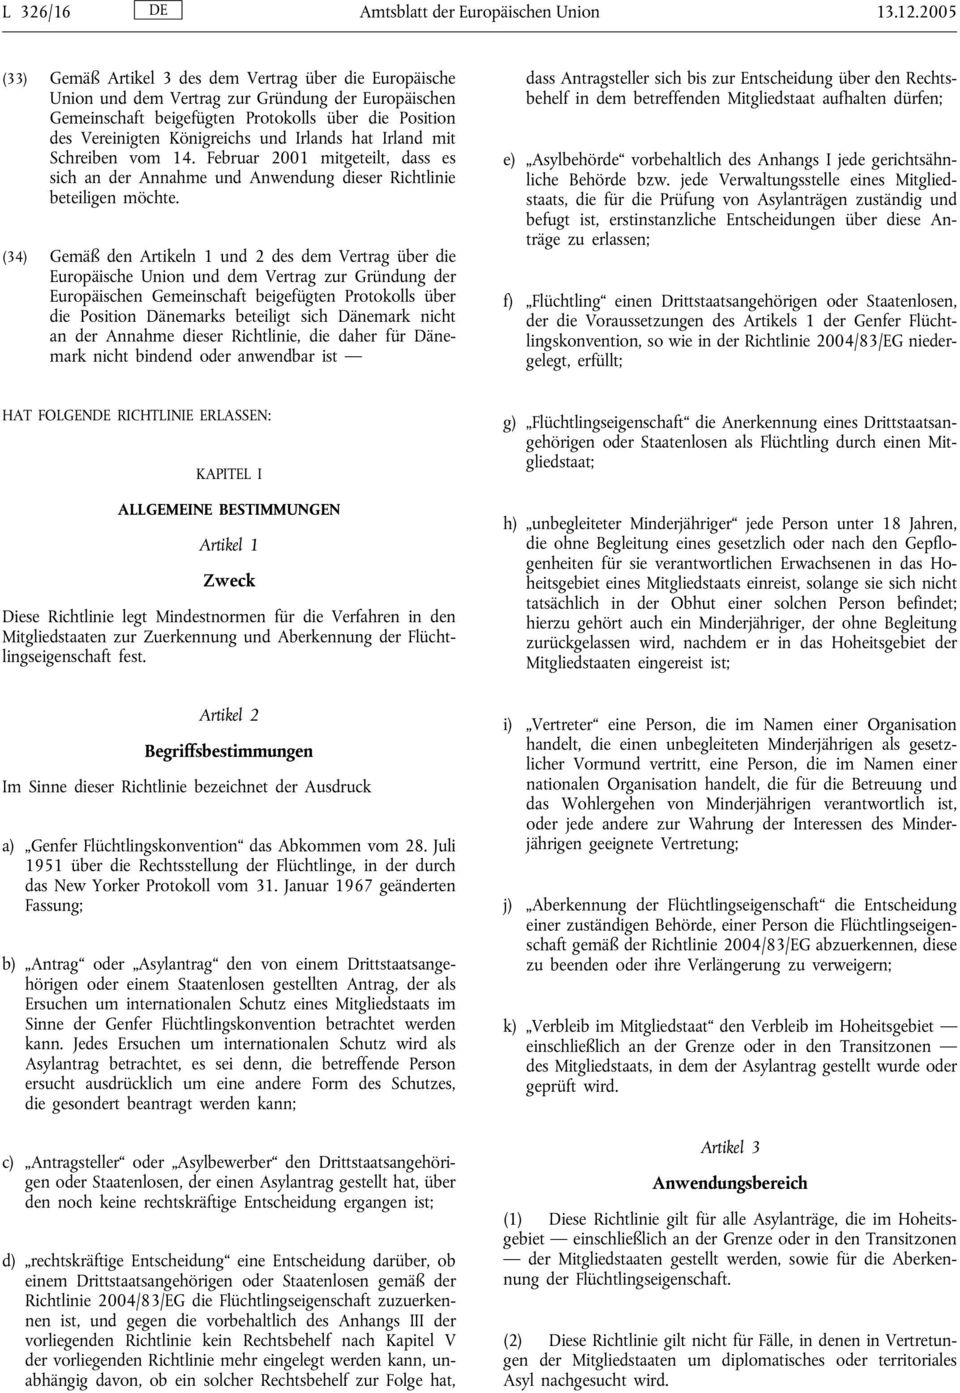 und Irlands hat Irland mit Schreiben vom 14. Februar 2001 mitgeteilt, dass es sich an der Annahme und Anwendung dieser Richtlinie beteiligen möchte.